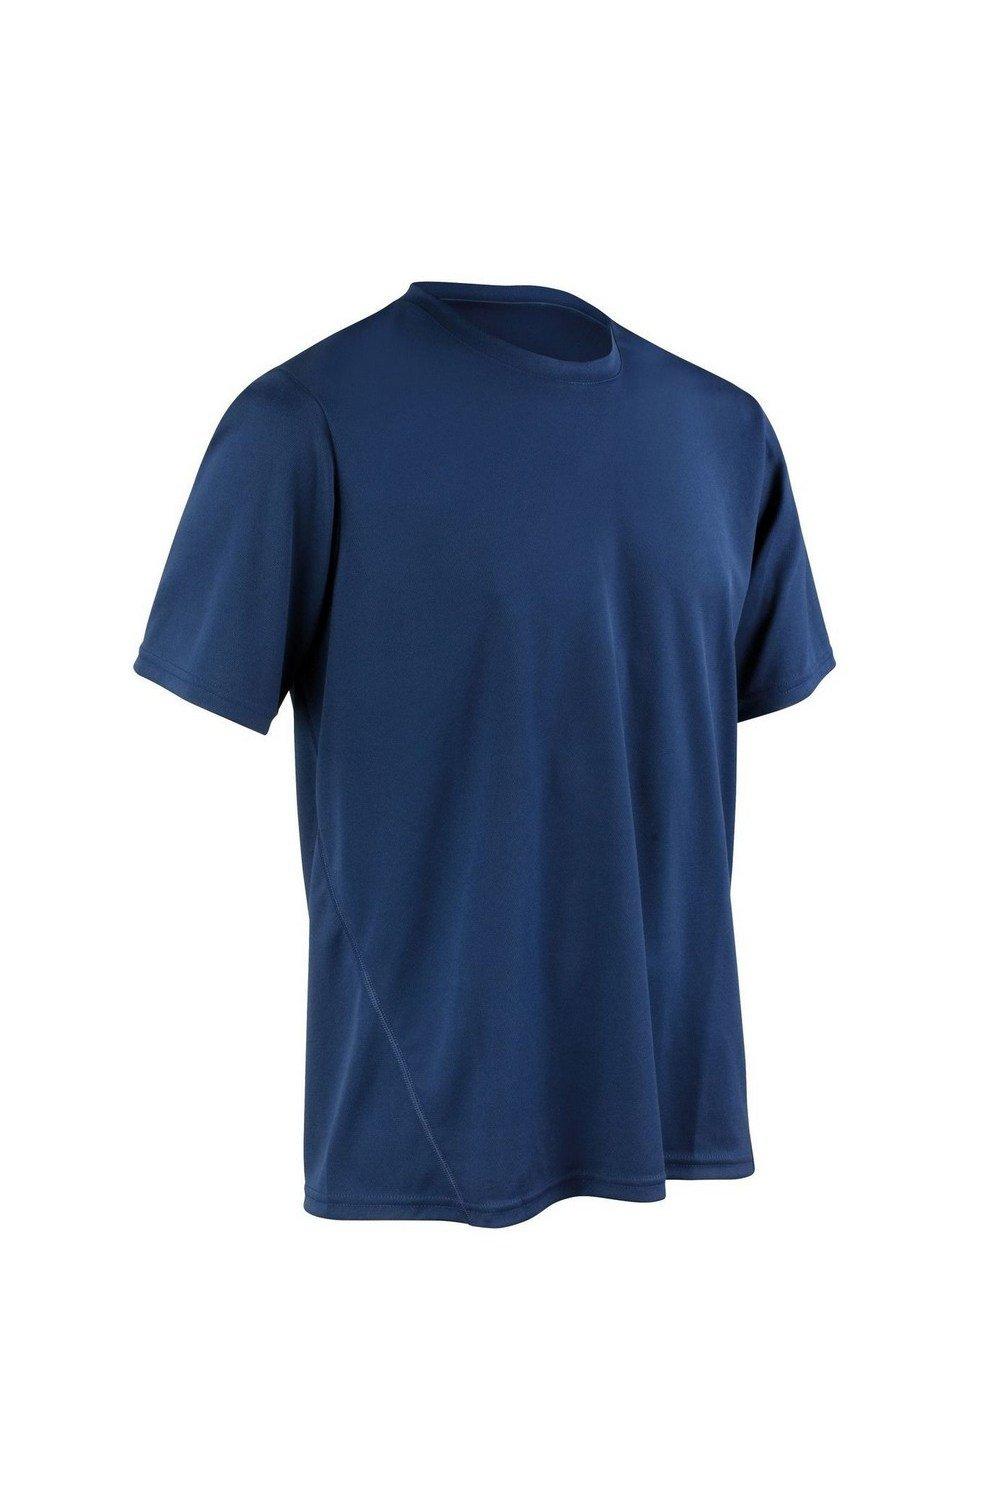 Быстросохнущая спортивная футболка с короткими рукавами Spiro, темно-синий